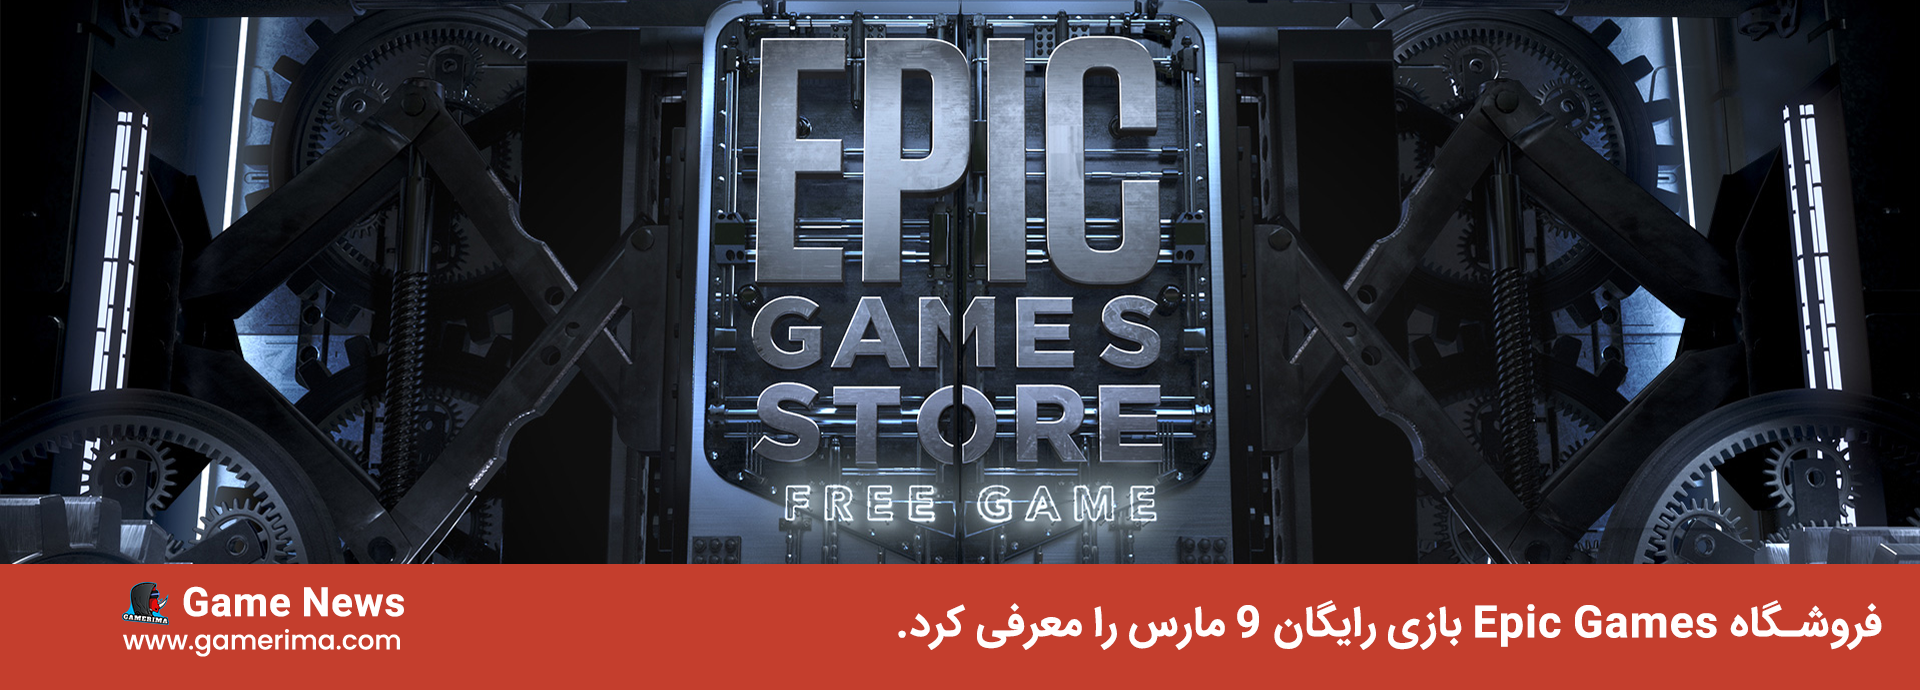 فروشگاه Epic Games بازی رایگان ۹ مارس را معرفی کرد.